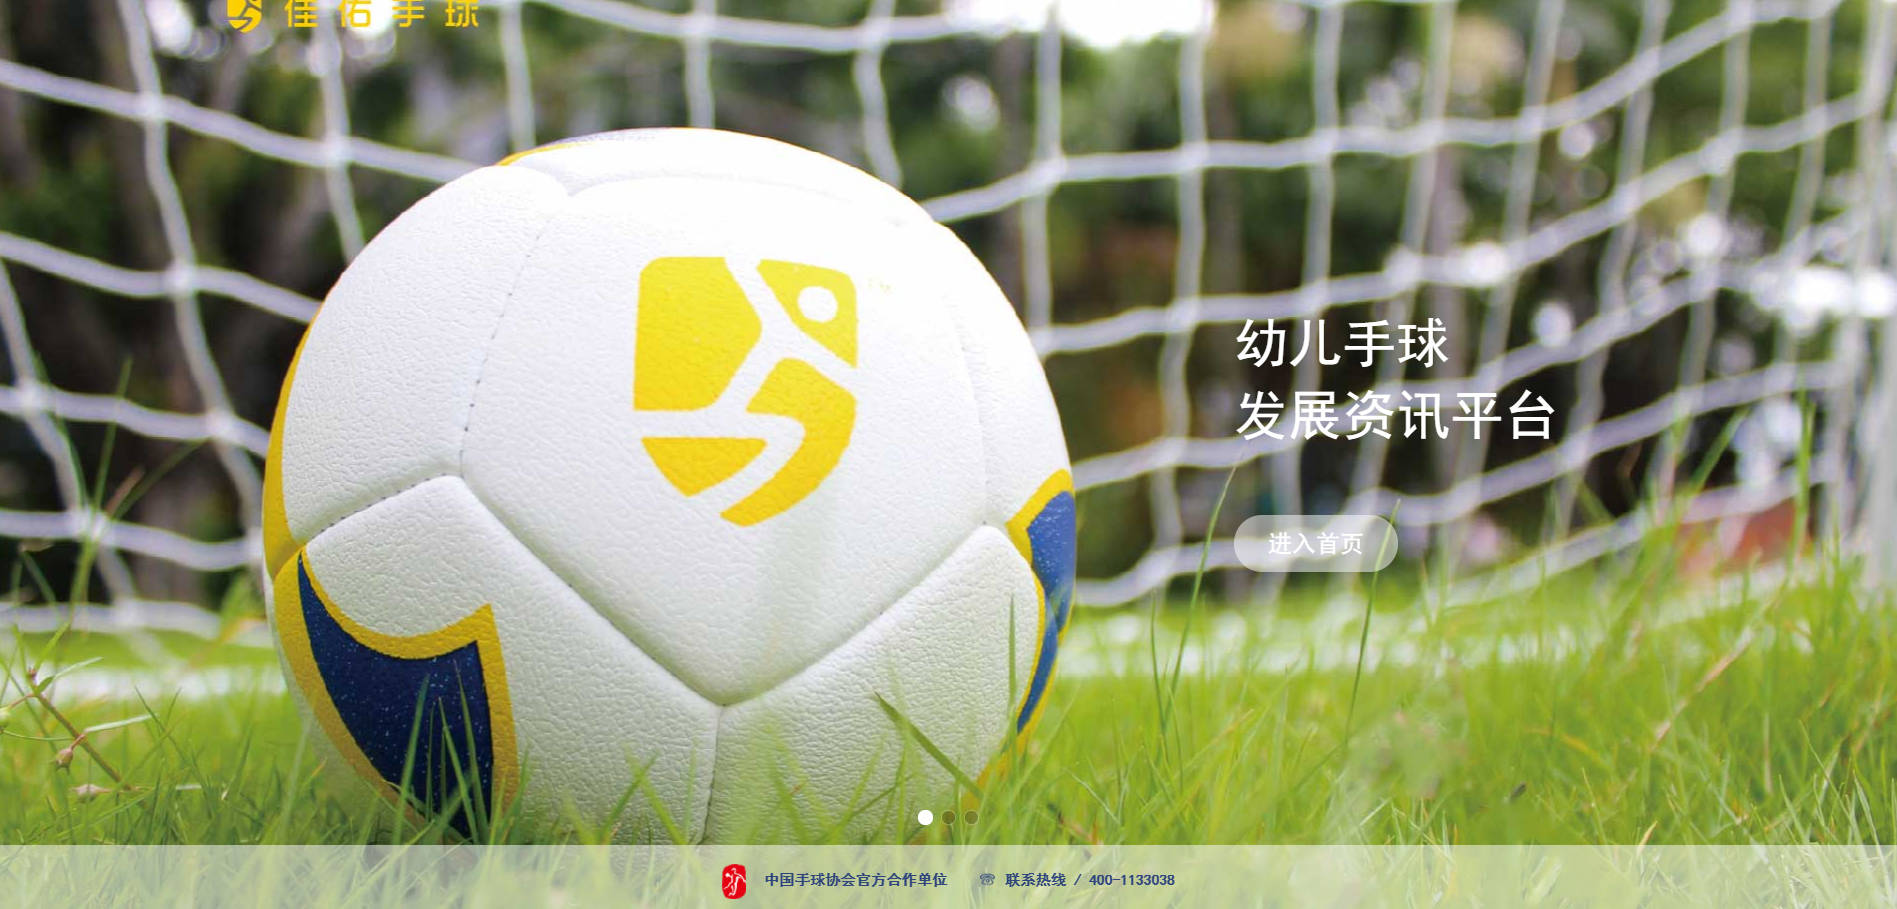 
“佳佑手球”官方网站正式上线！-ga黄金甲体育官方网站